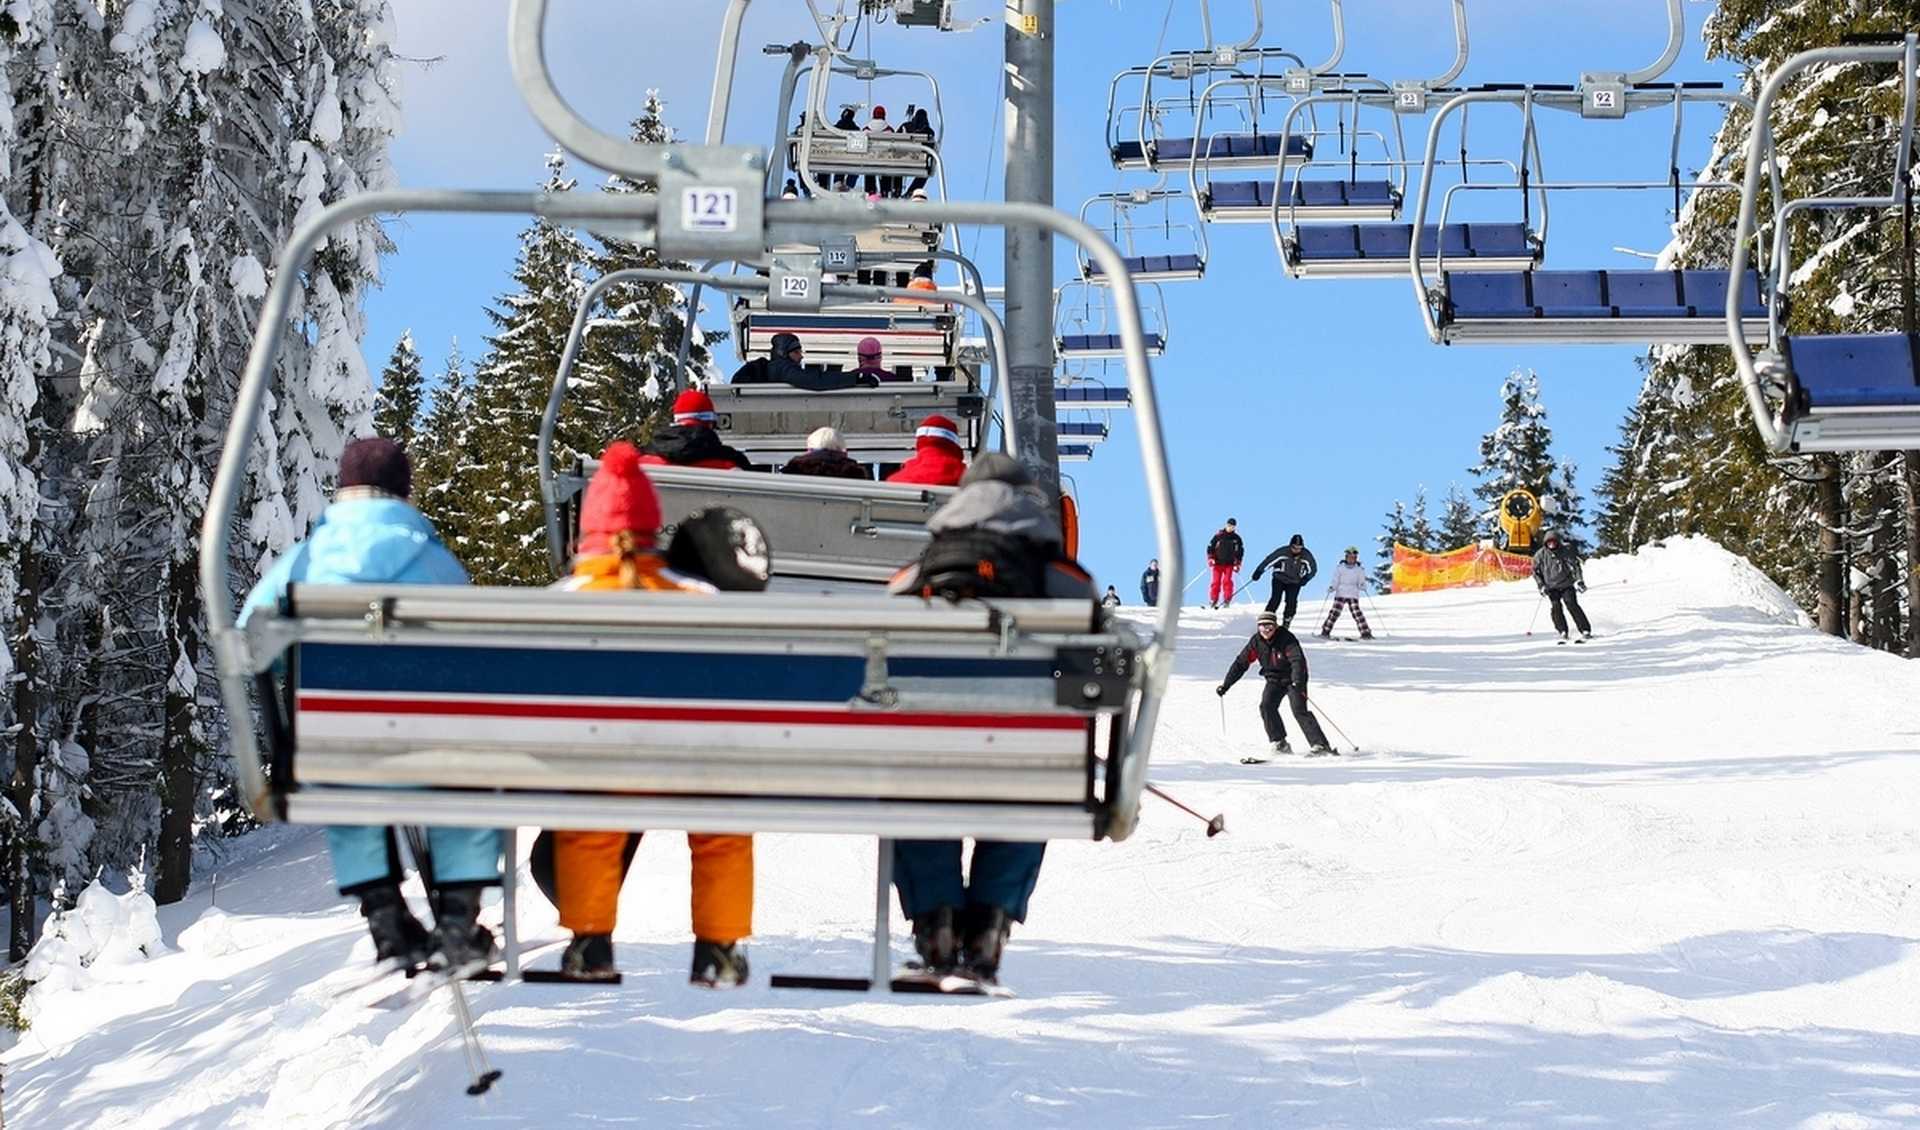 Буковель в феврале: всем на лыжню!